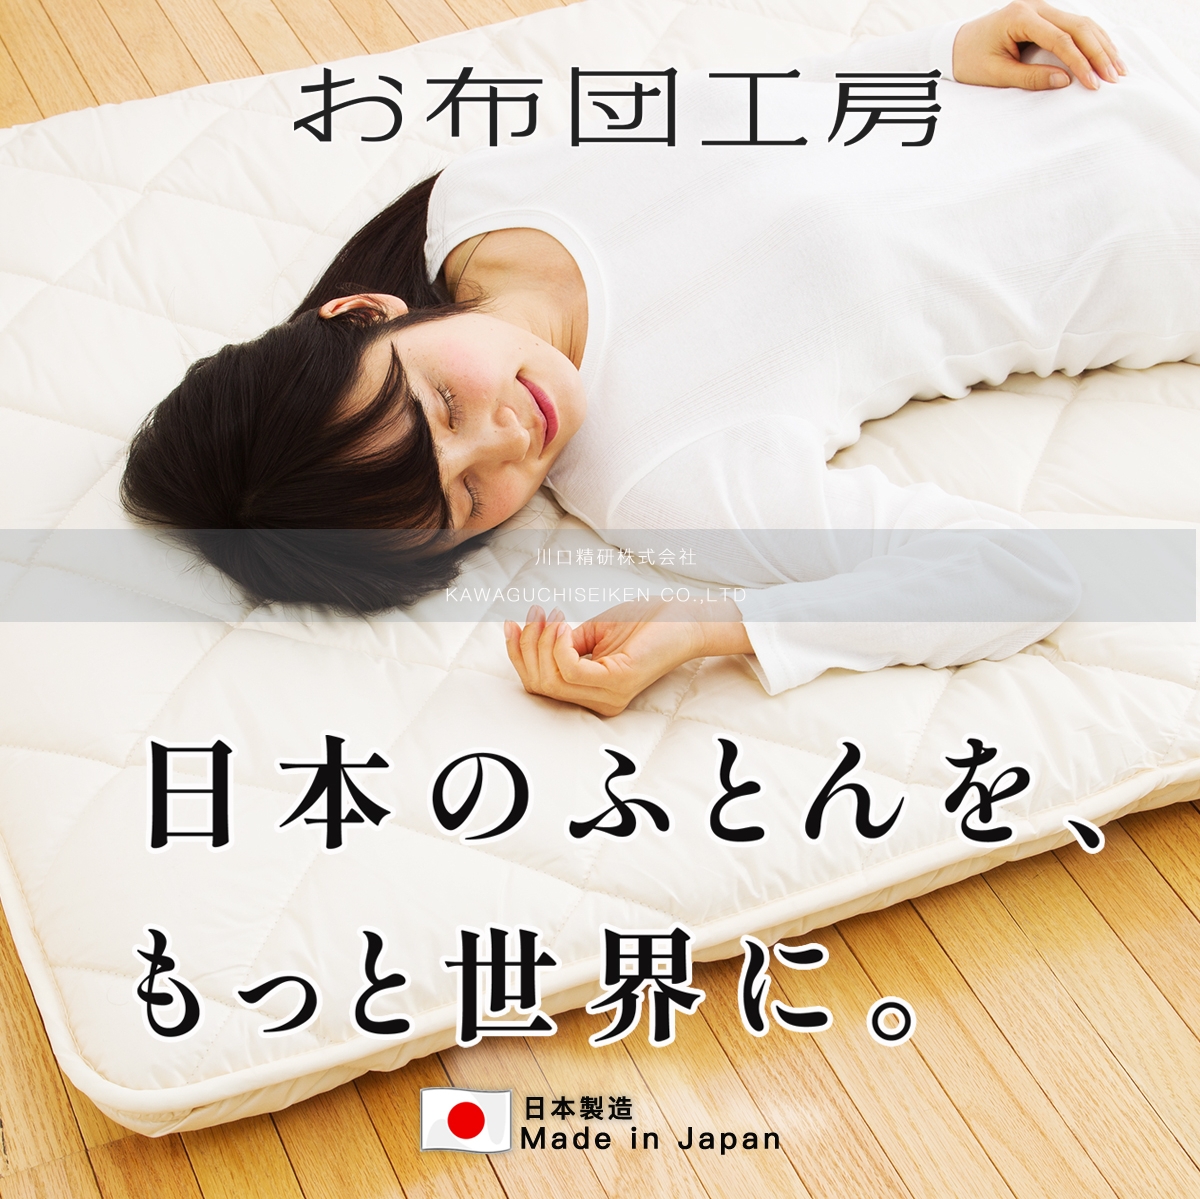 日本原装进口日本制造日式榻榻米床垫加厚地铺睡垫折叠床垫敷布团